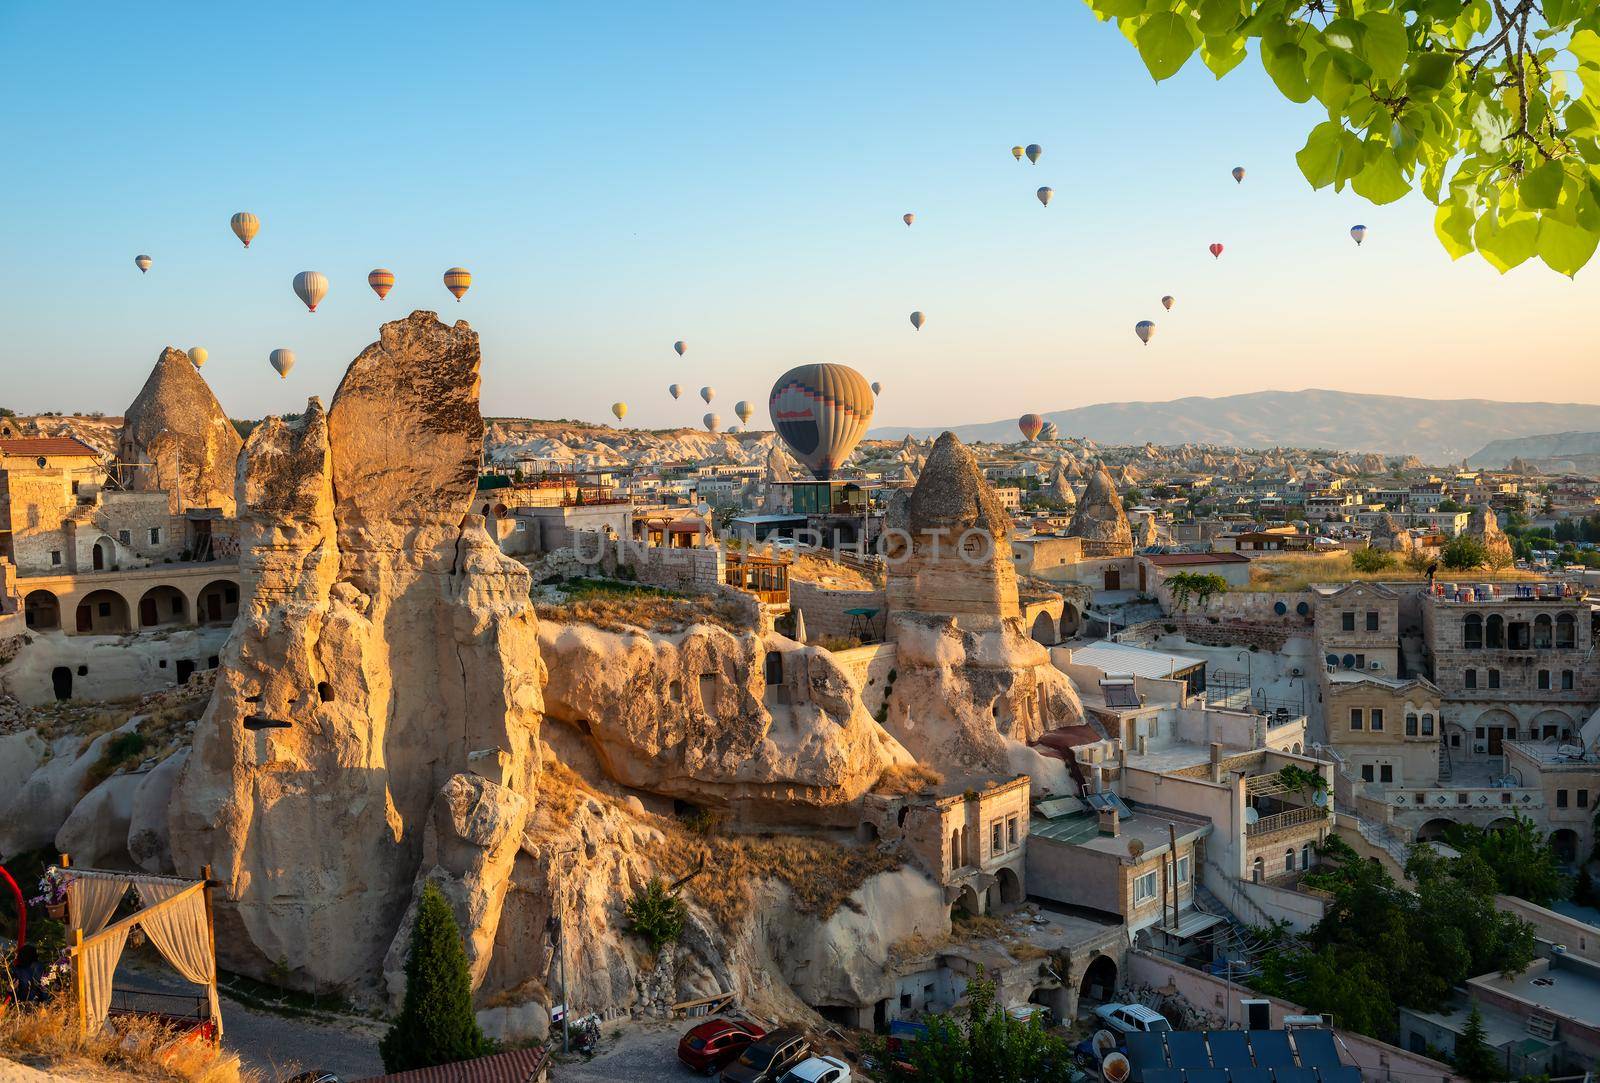 Hot air balloons over rocks in Cappadocia